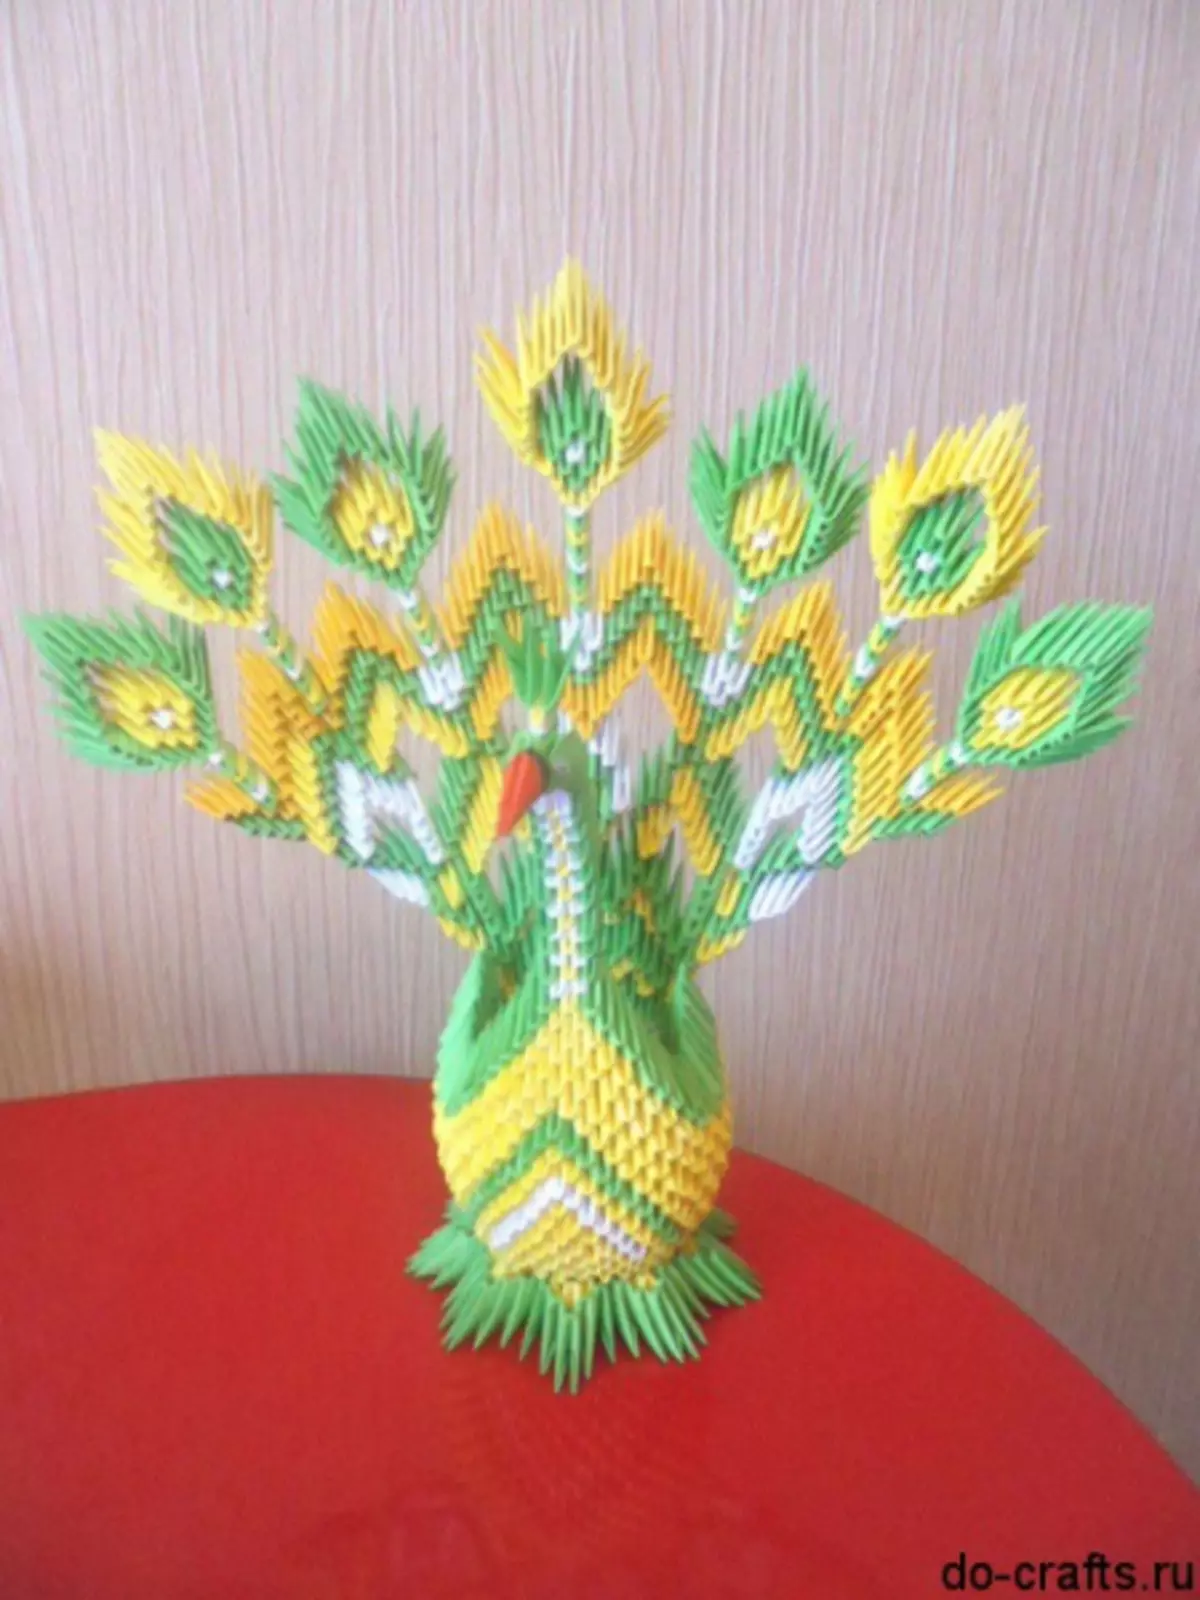 Modular Origami: Peacock, Master kirasi negungano nevhidhiyo